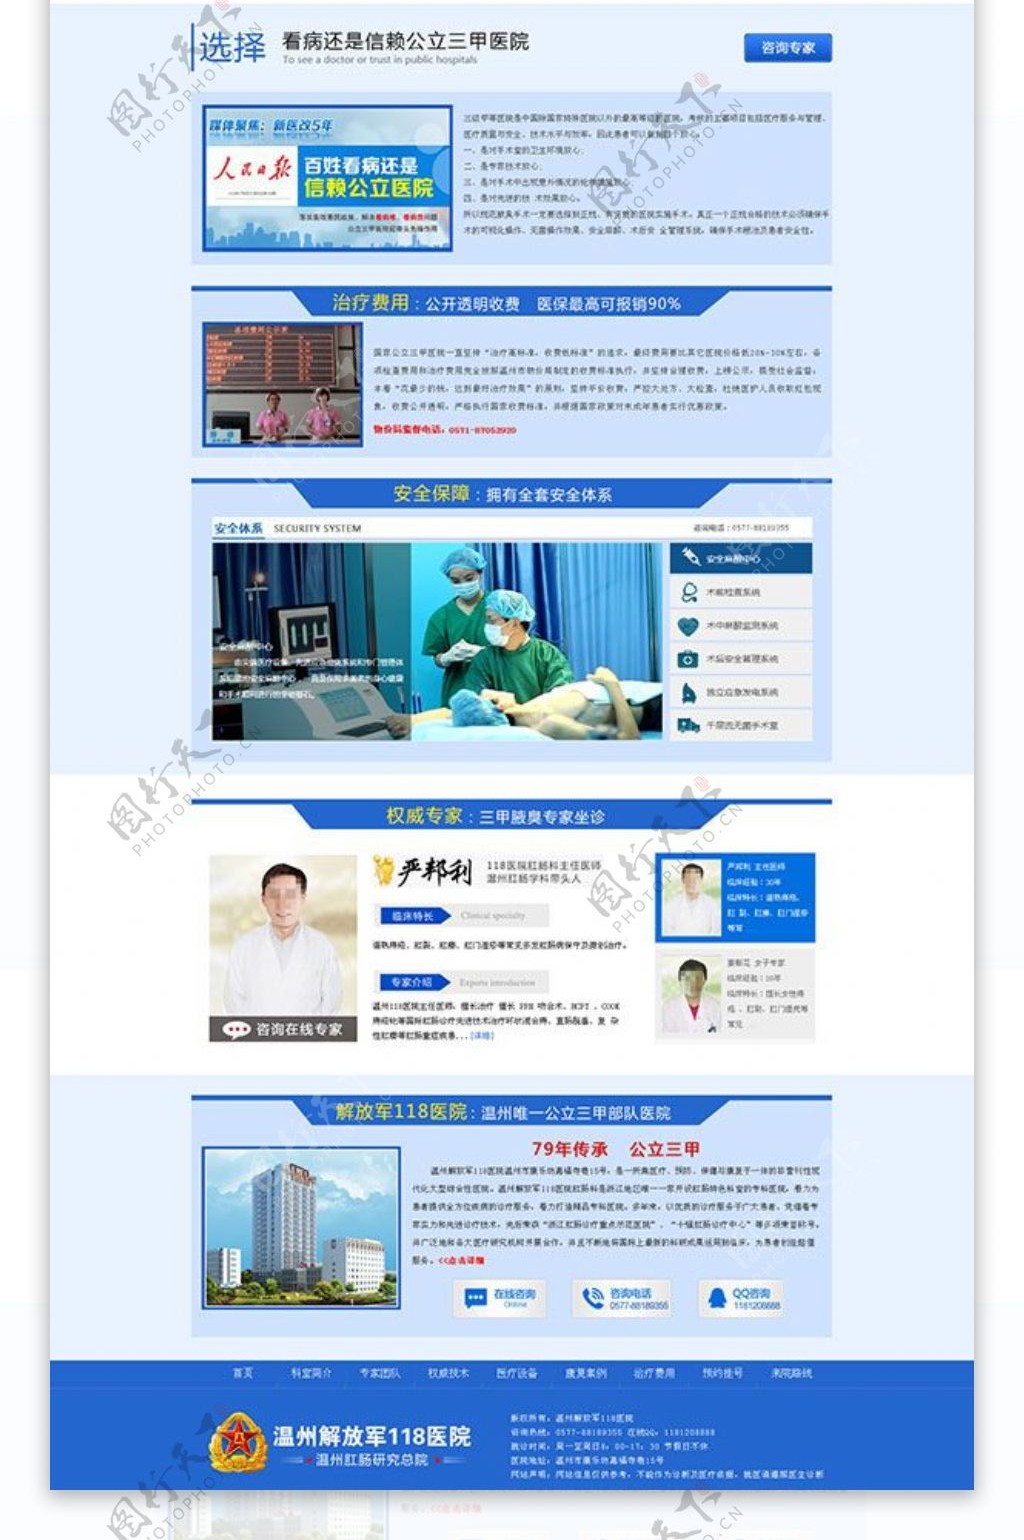 民营医院网站